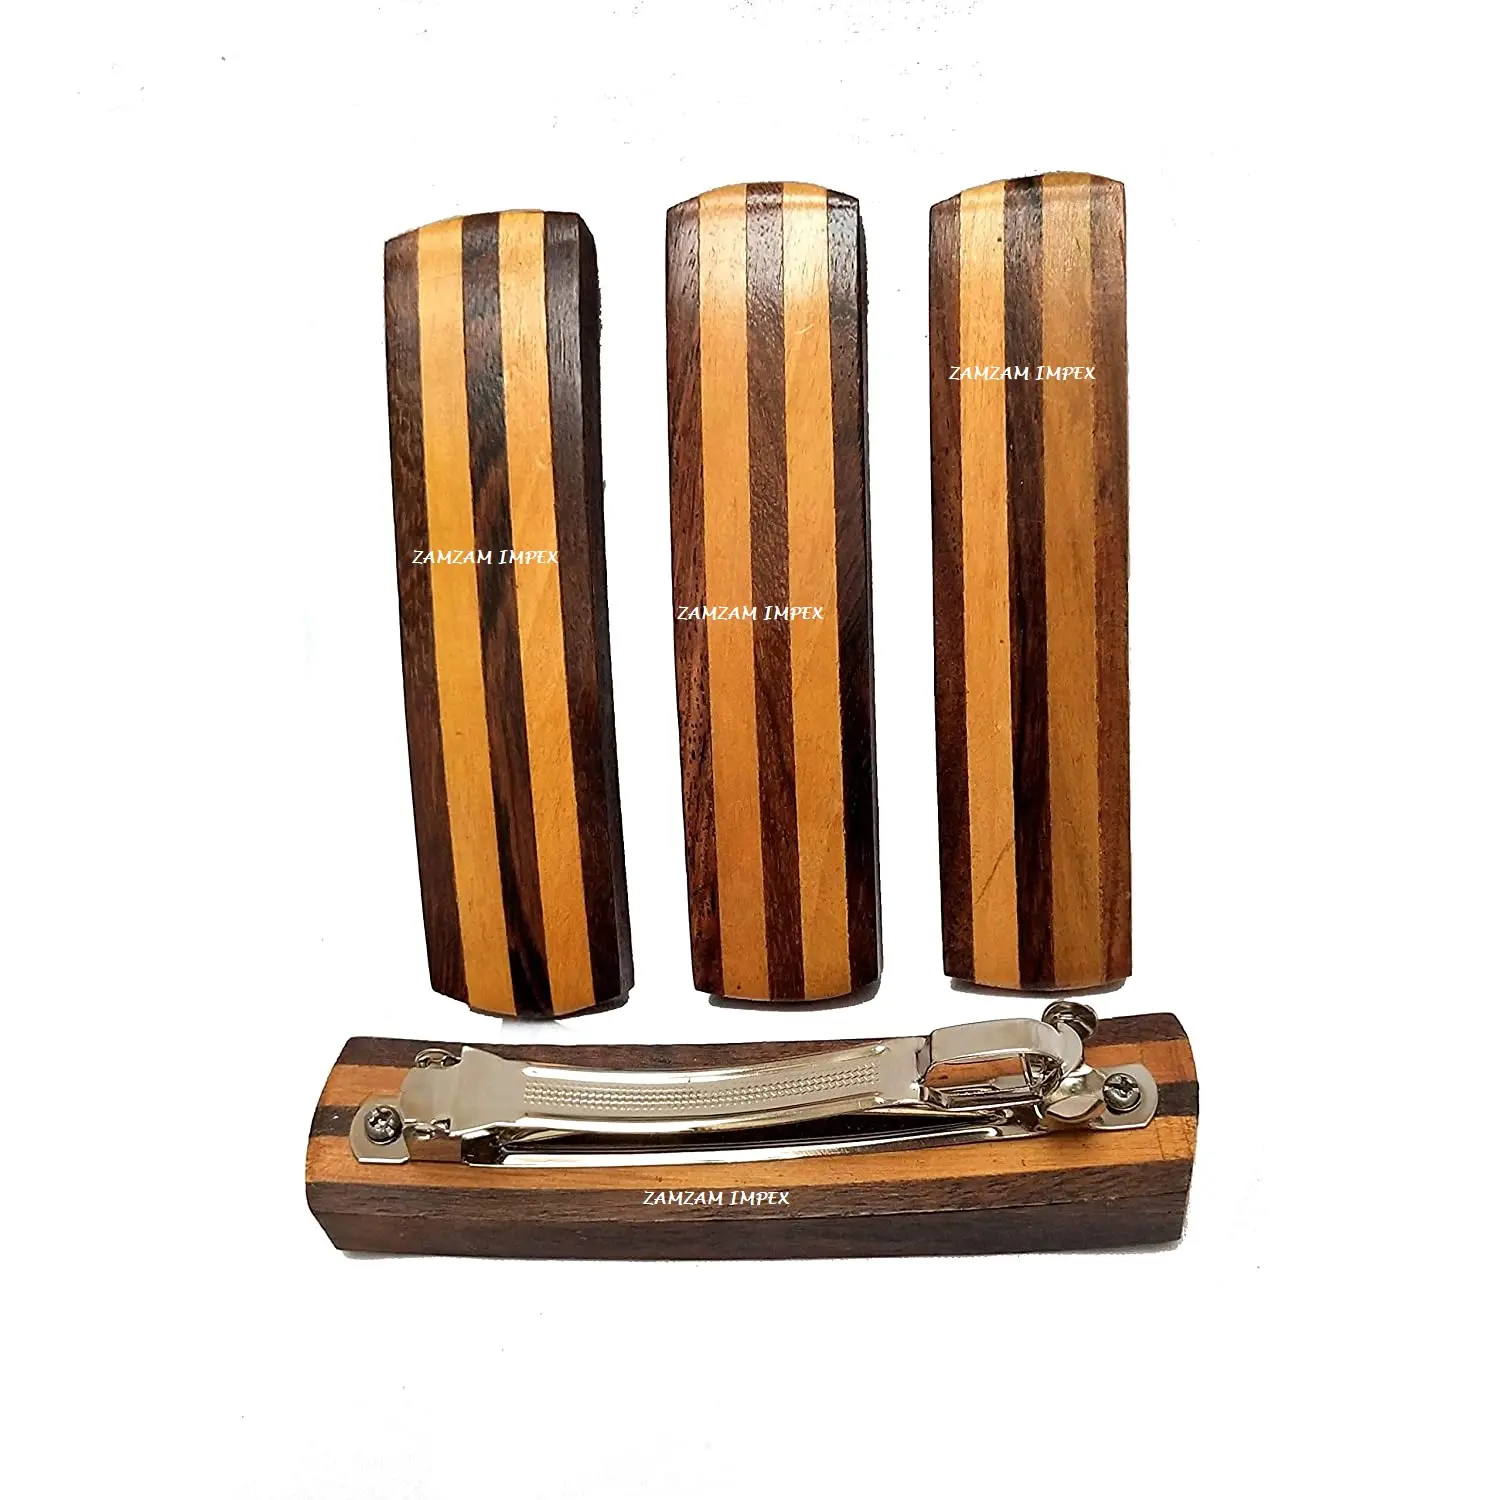 ZAMZAM IMPEX-pinza de madera para el pelo hecha a mano, accesorios para el cabello en madera de Acacia pura